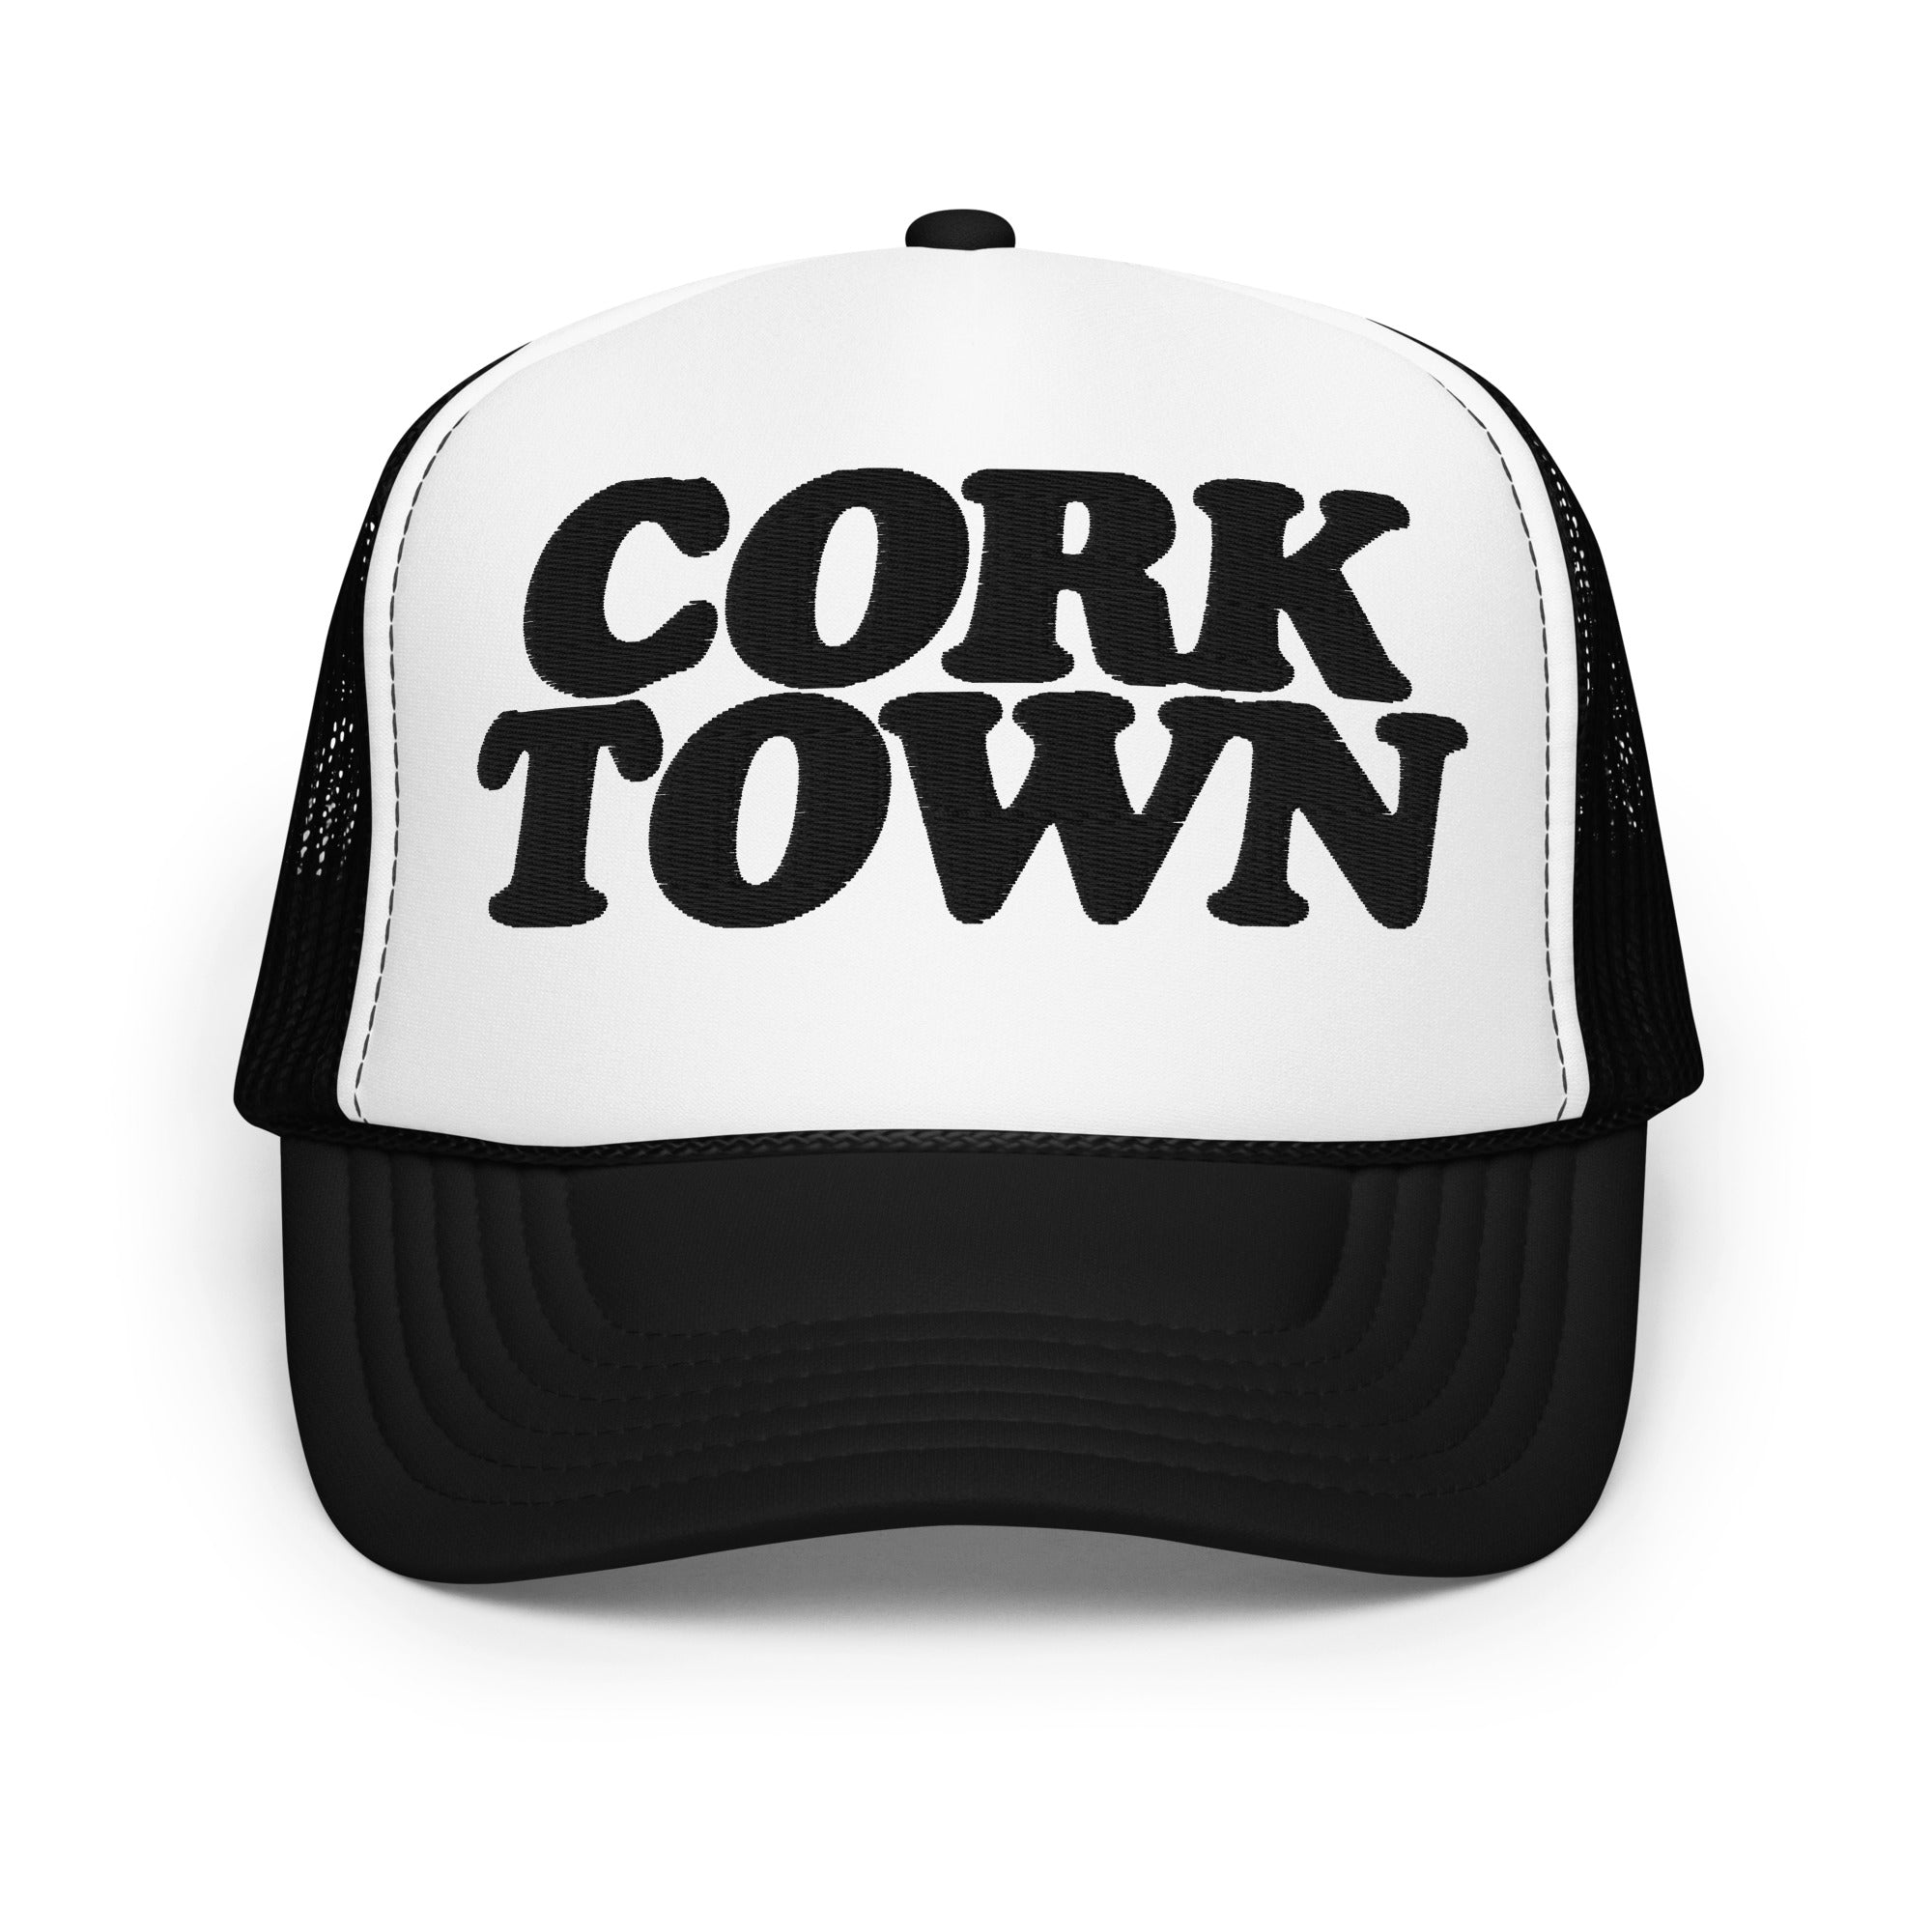 Corktown Foam Trucker Hat - Embroidered - Black / White  Default Title  